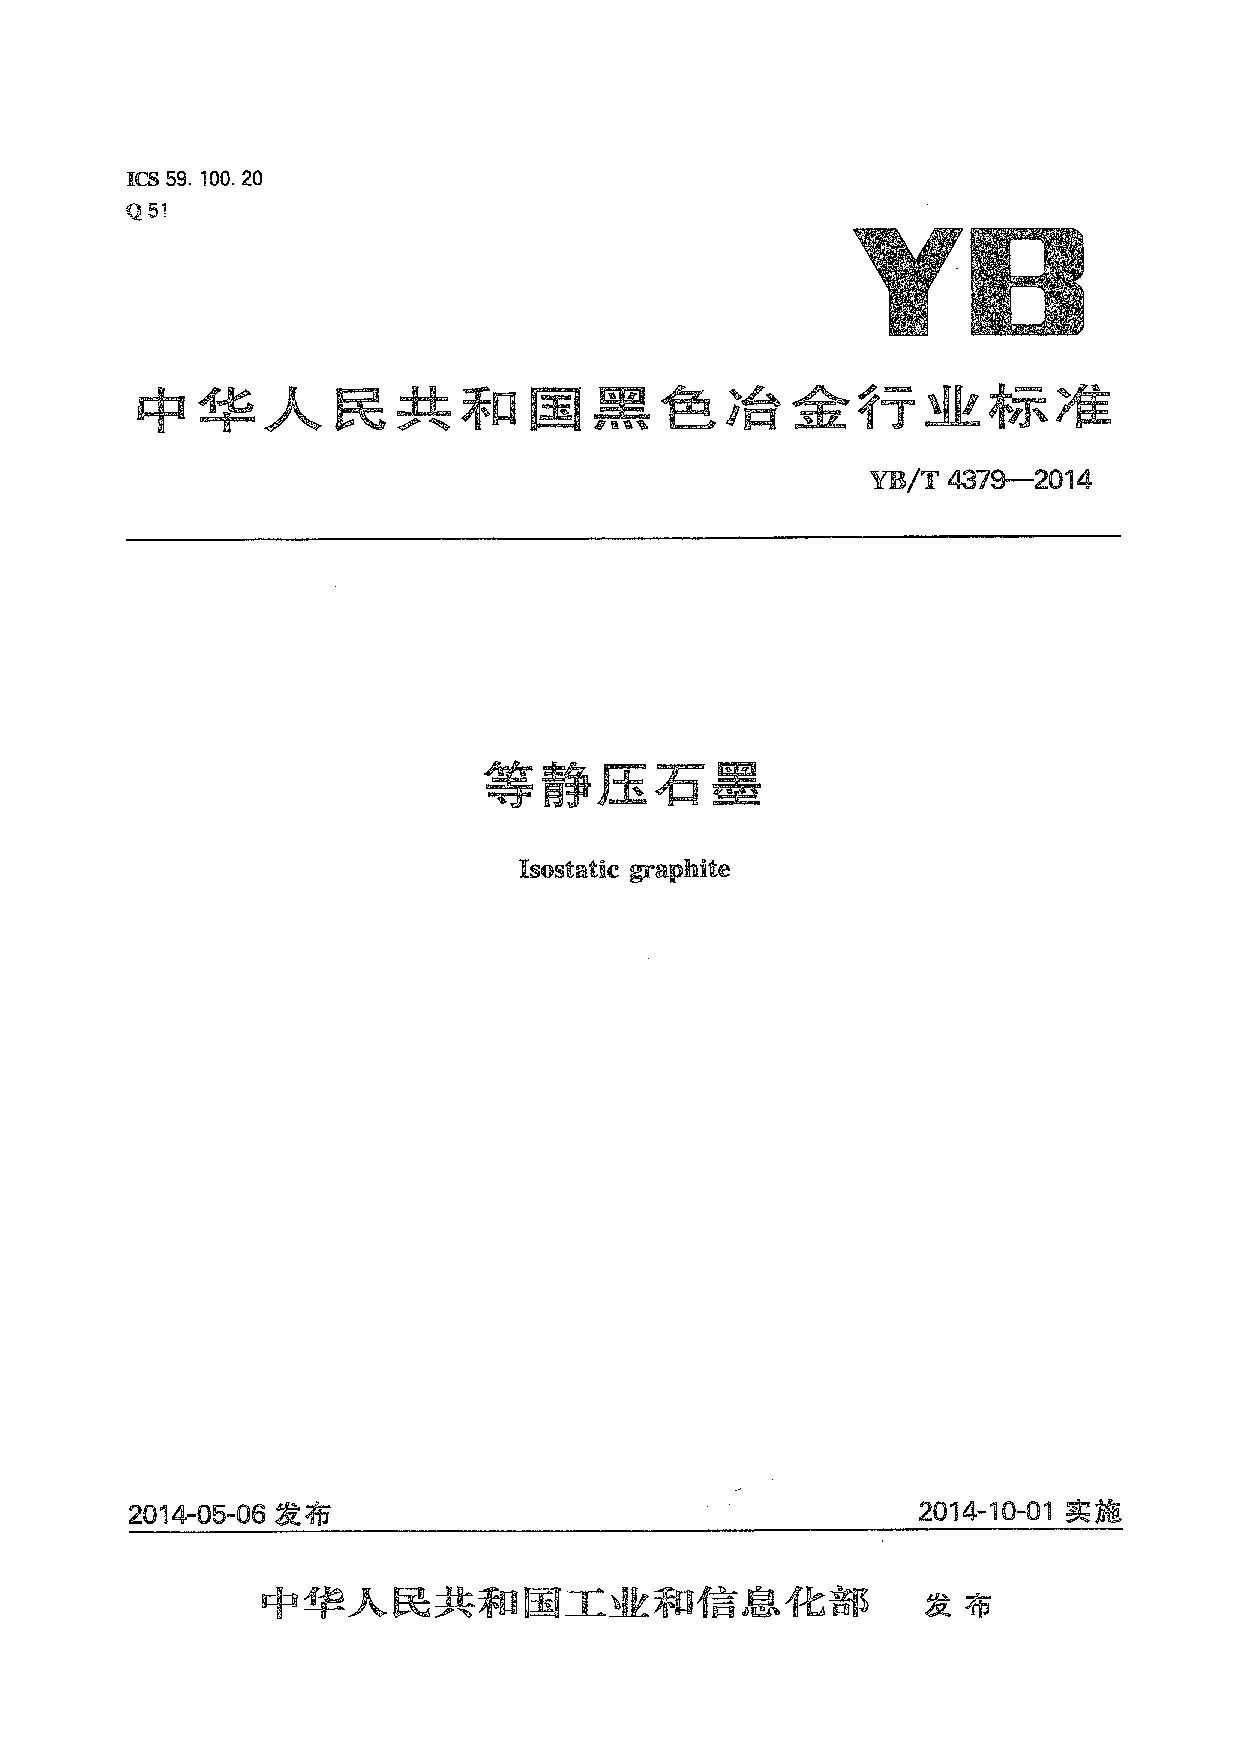 YB/T 4379-2014封面图